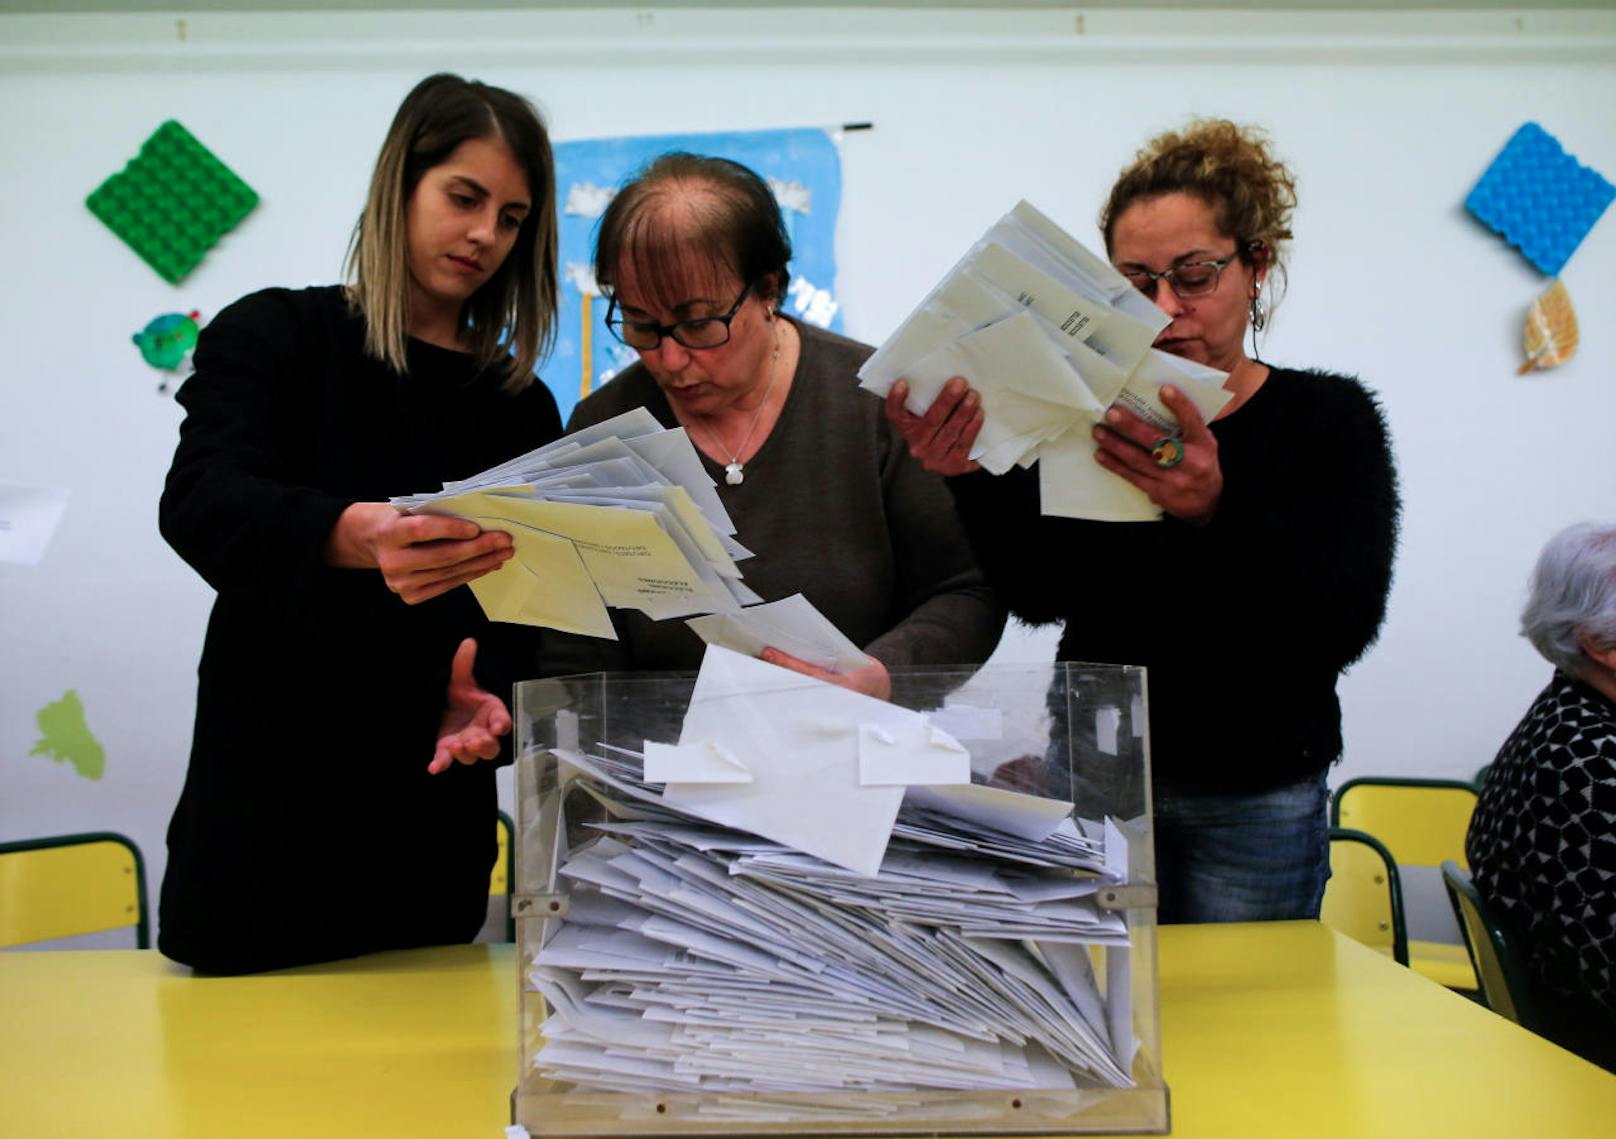 Bei der Regionalwahl in der spanischen Region Katalonien dürften die Separatisten nach offiziellen Teilergebnissen ihre absolute Mehrheit verteidigt haben.